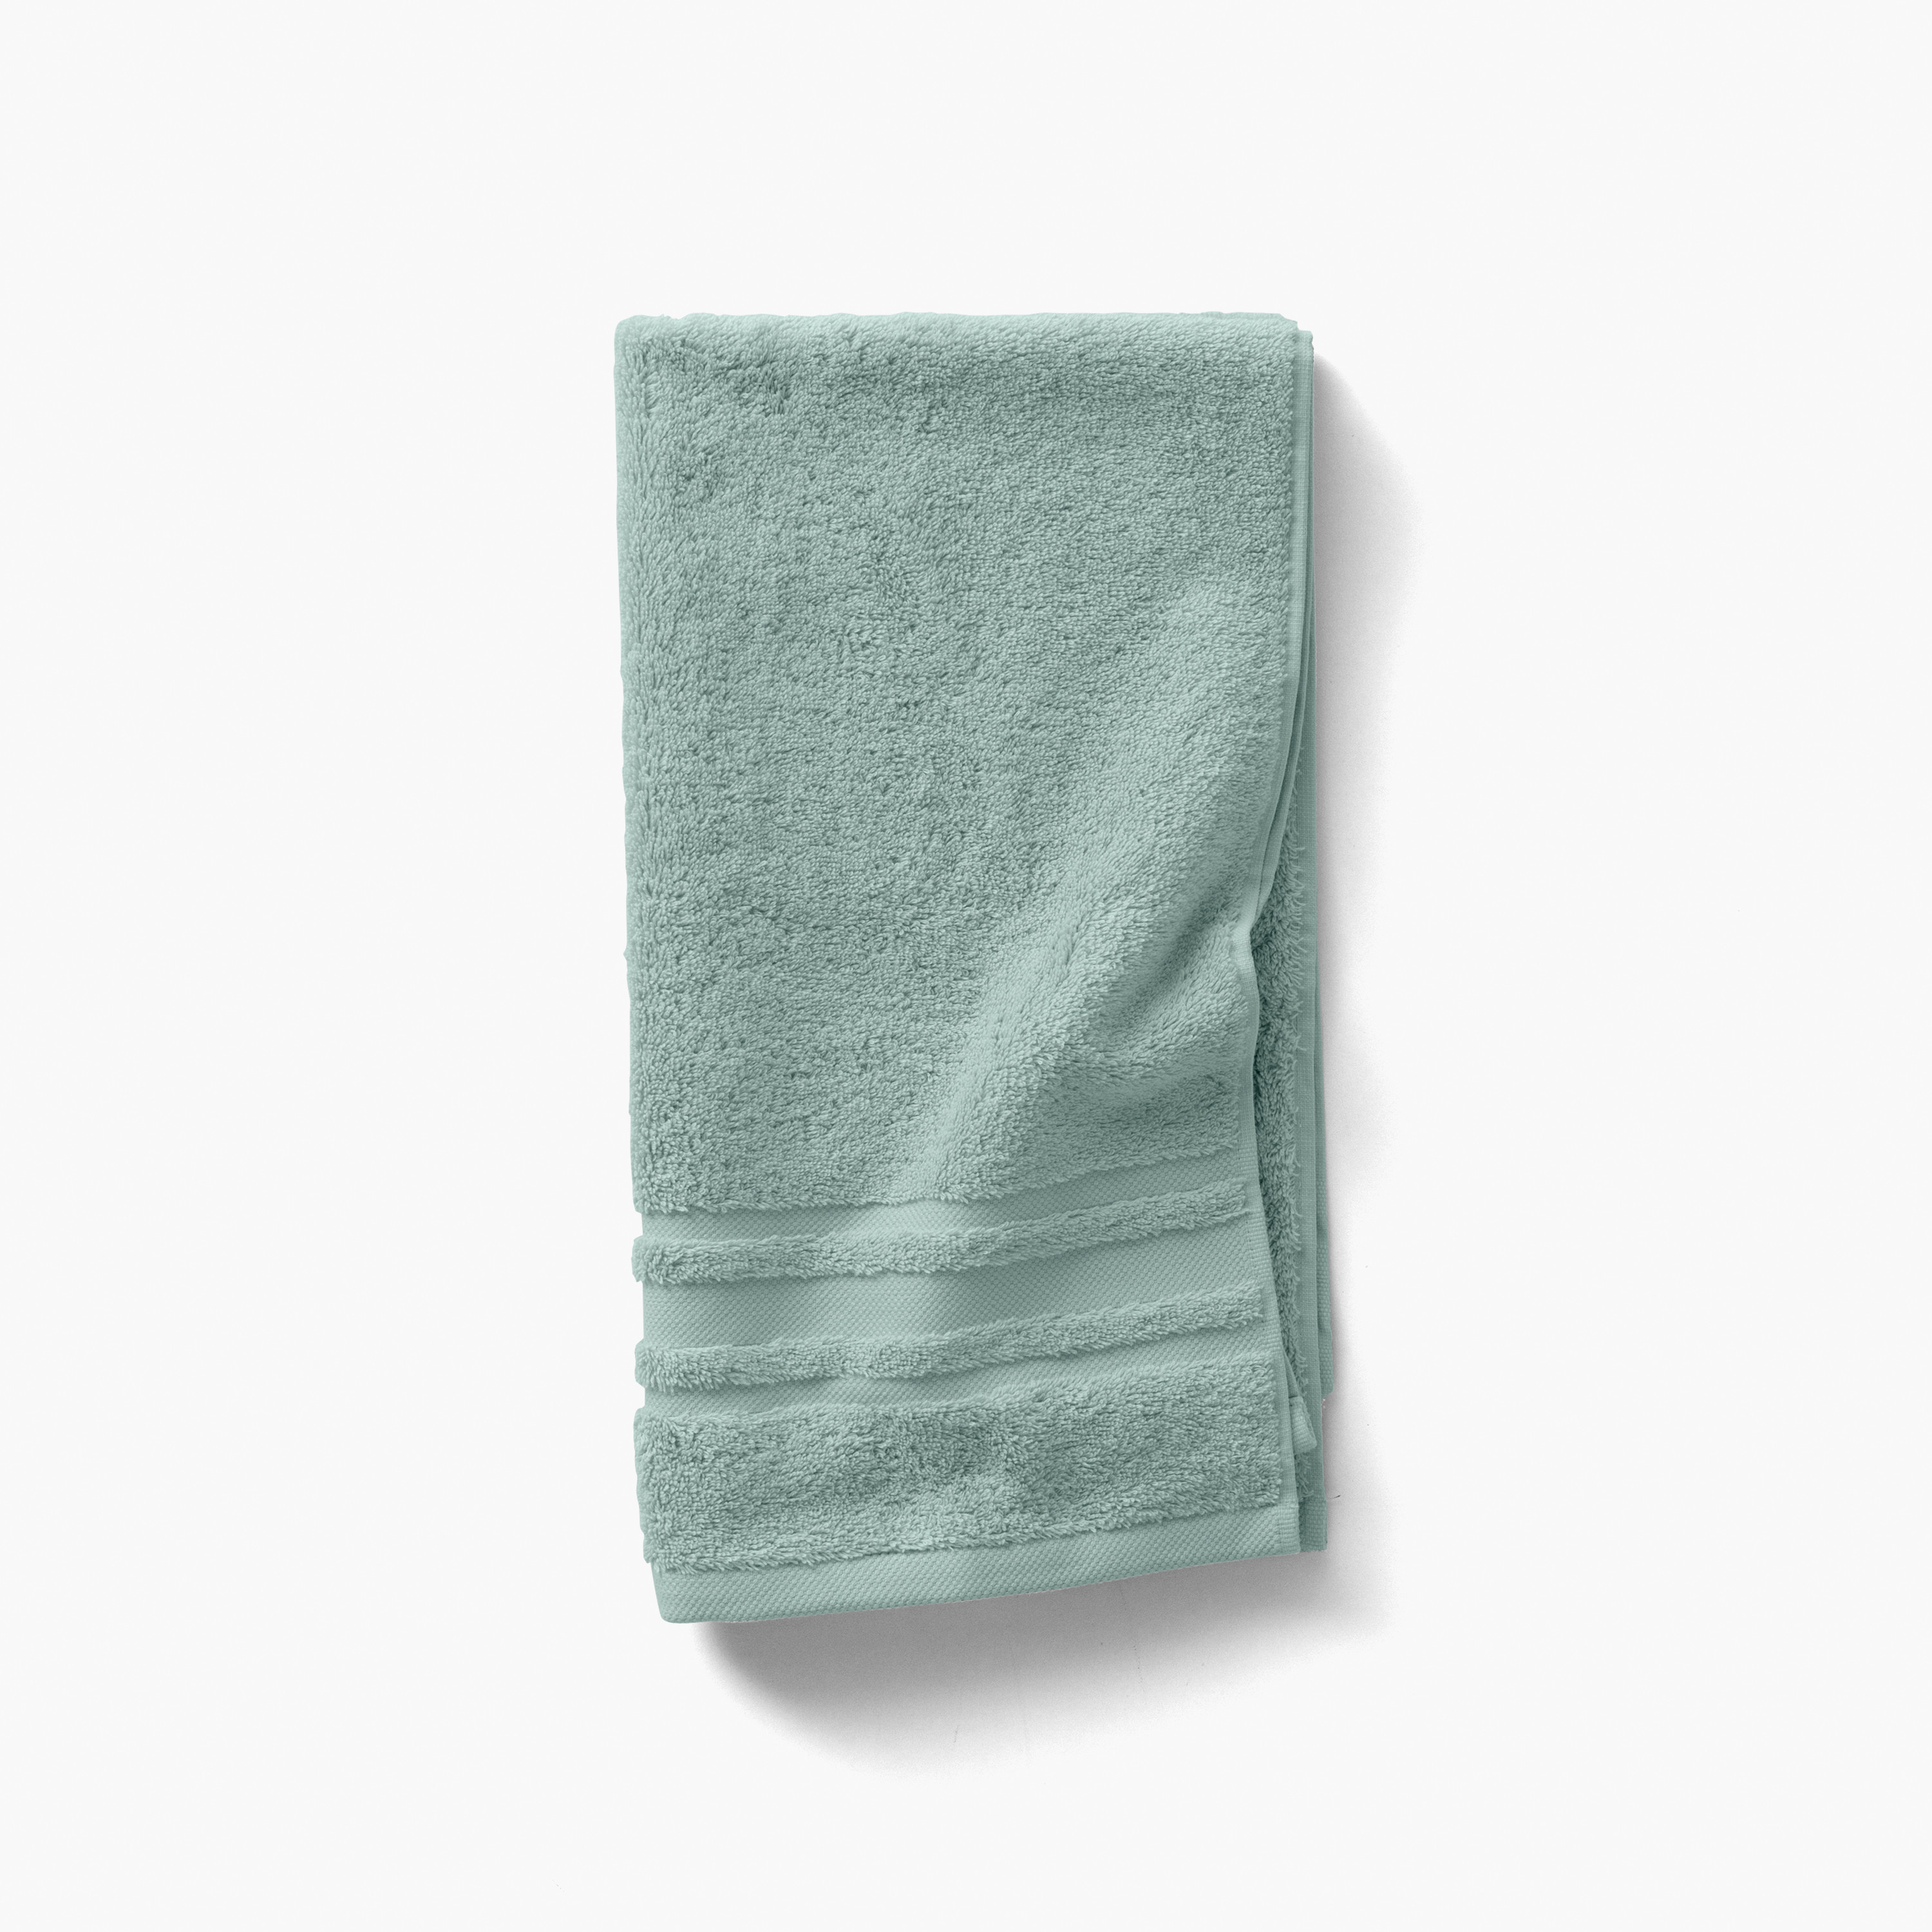 Lola II clay cotton bath towel